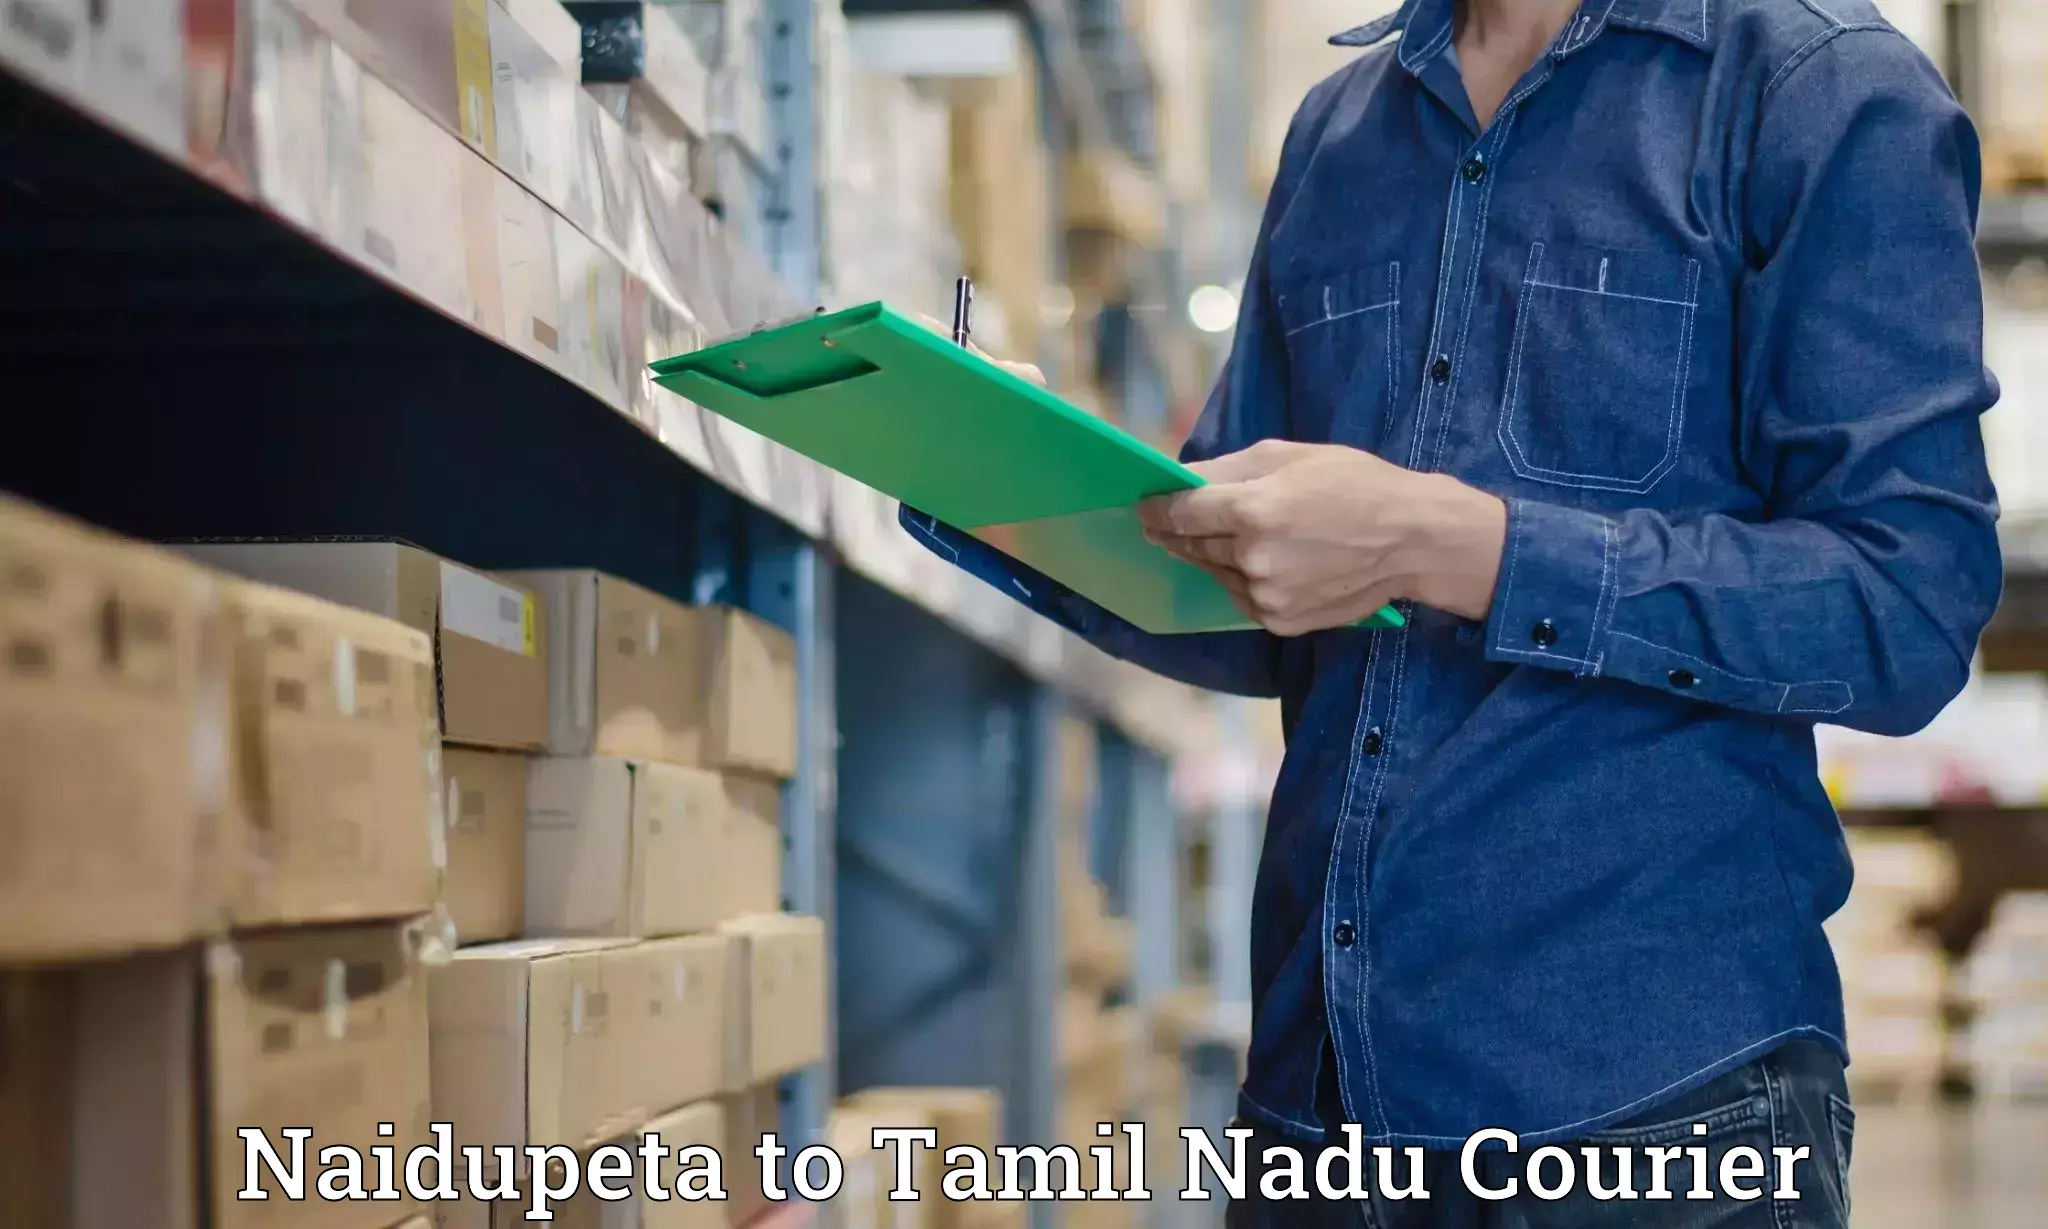 Digital courier platforms Naidupeta to Ambasamudram